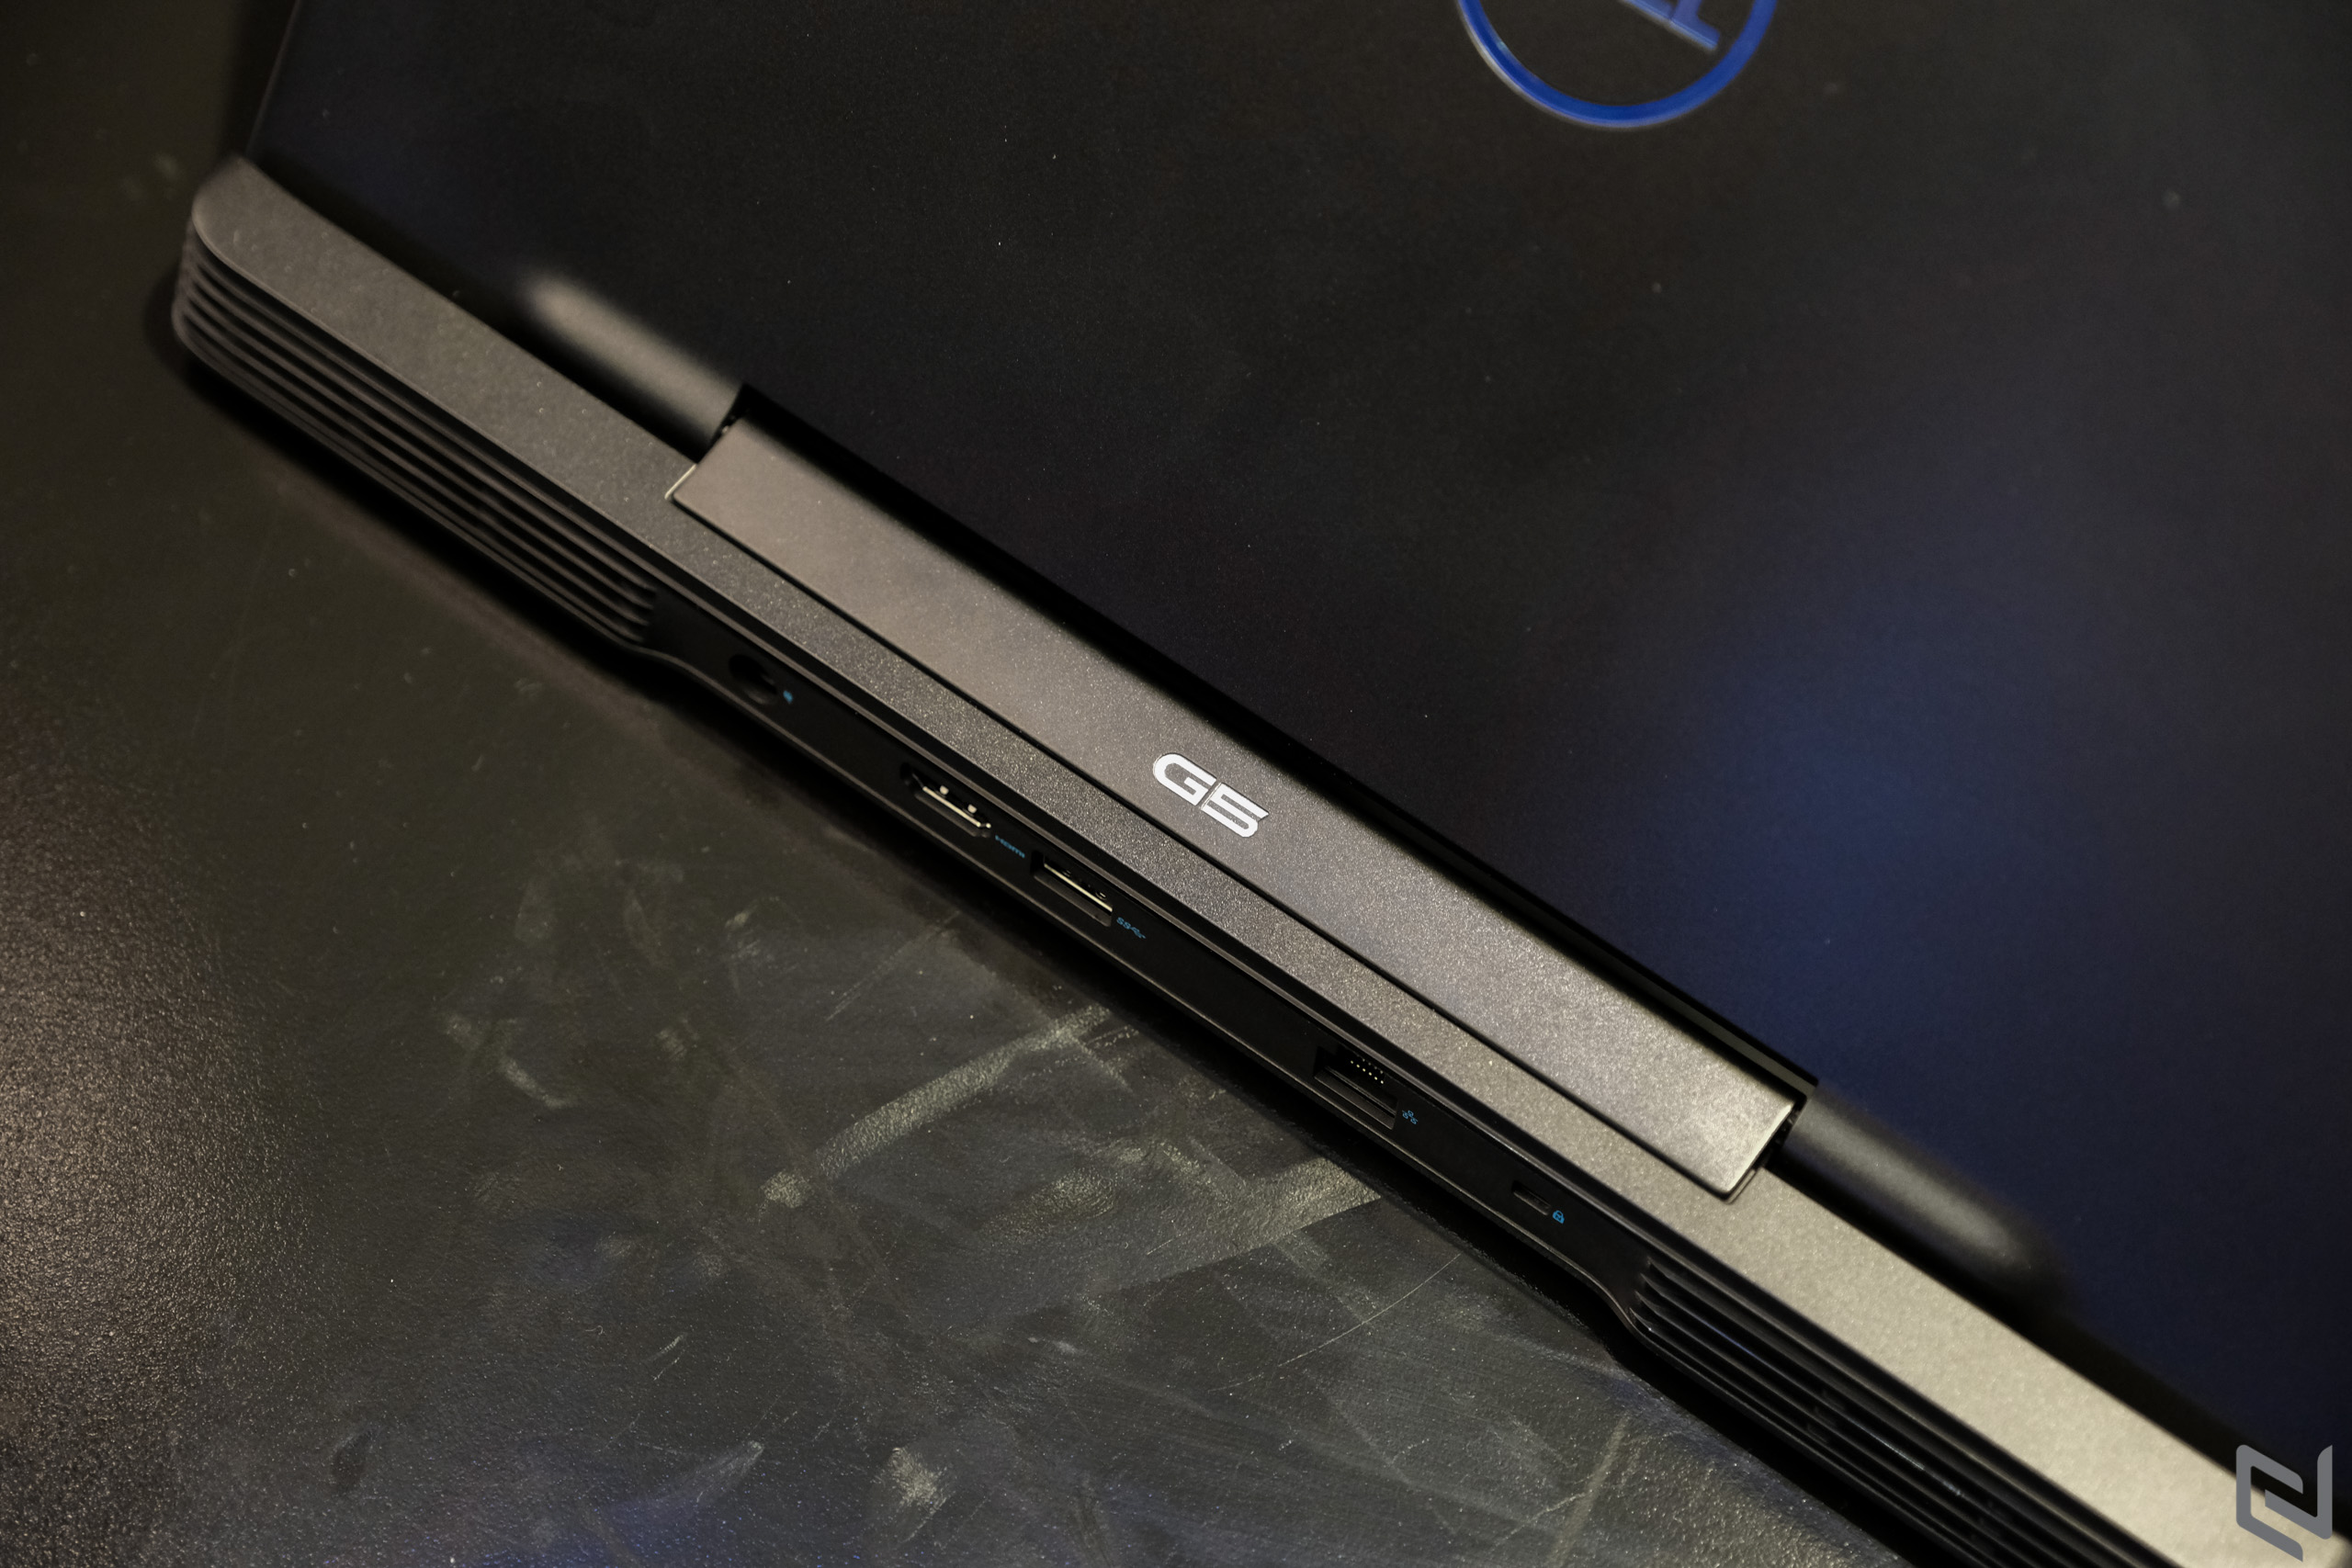 Dell làm mới dòng laptop gaming G-series 2019 mang đến trải nghiệm mượt mà hơn